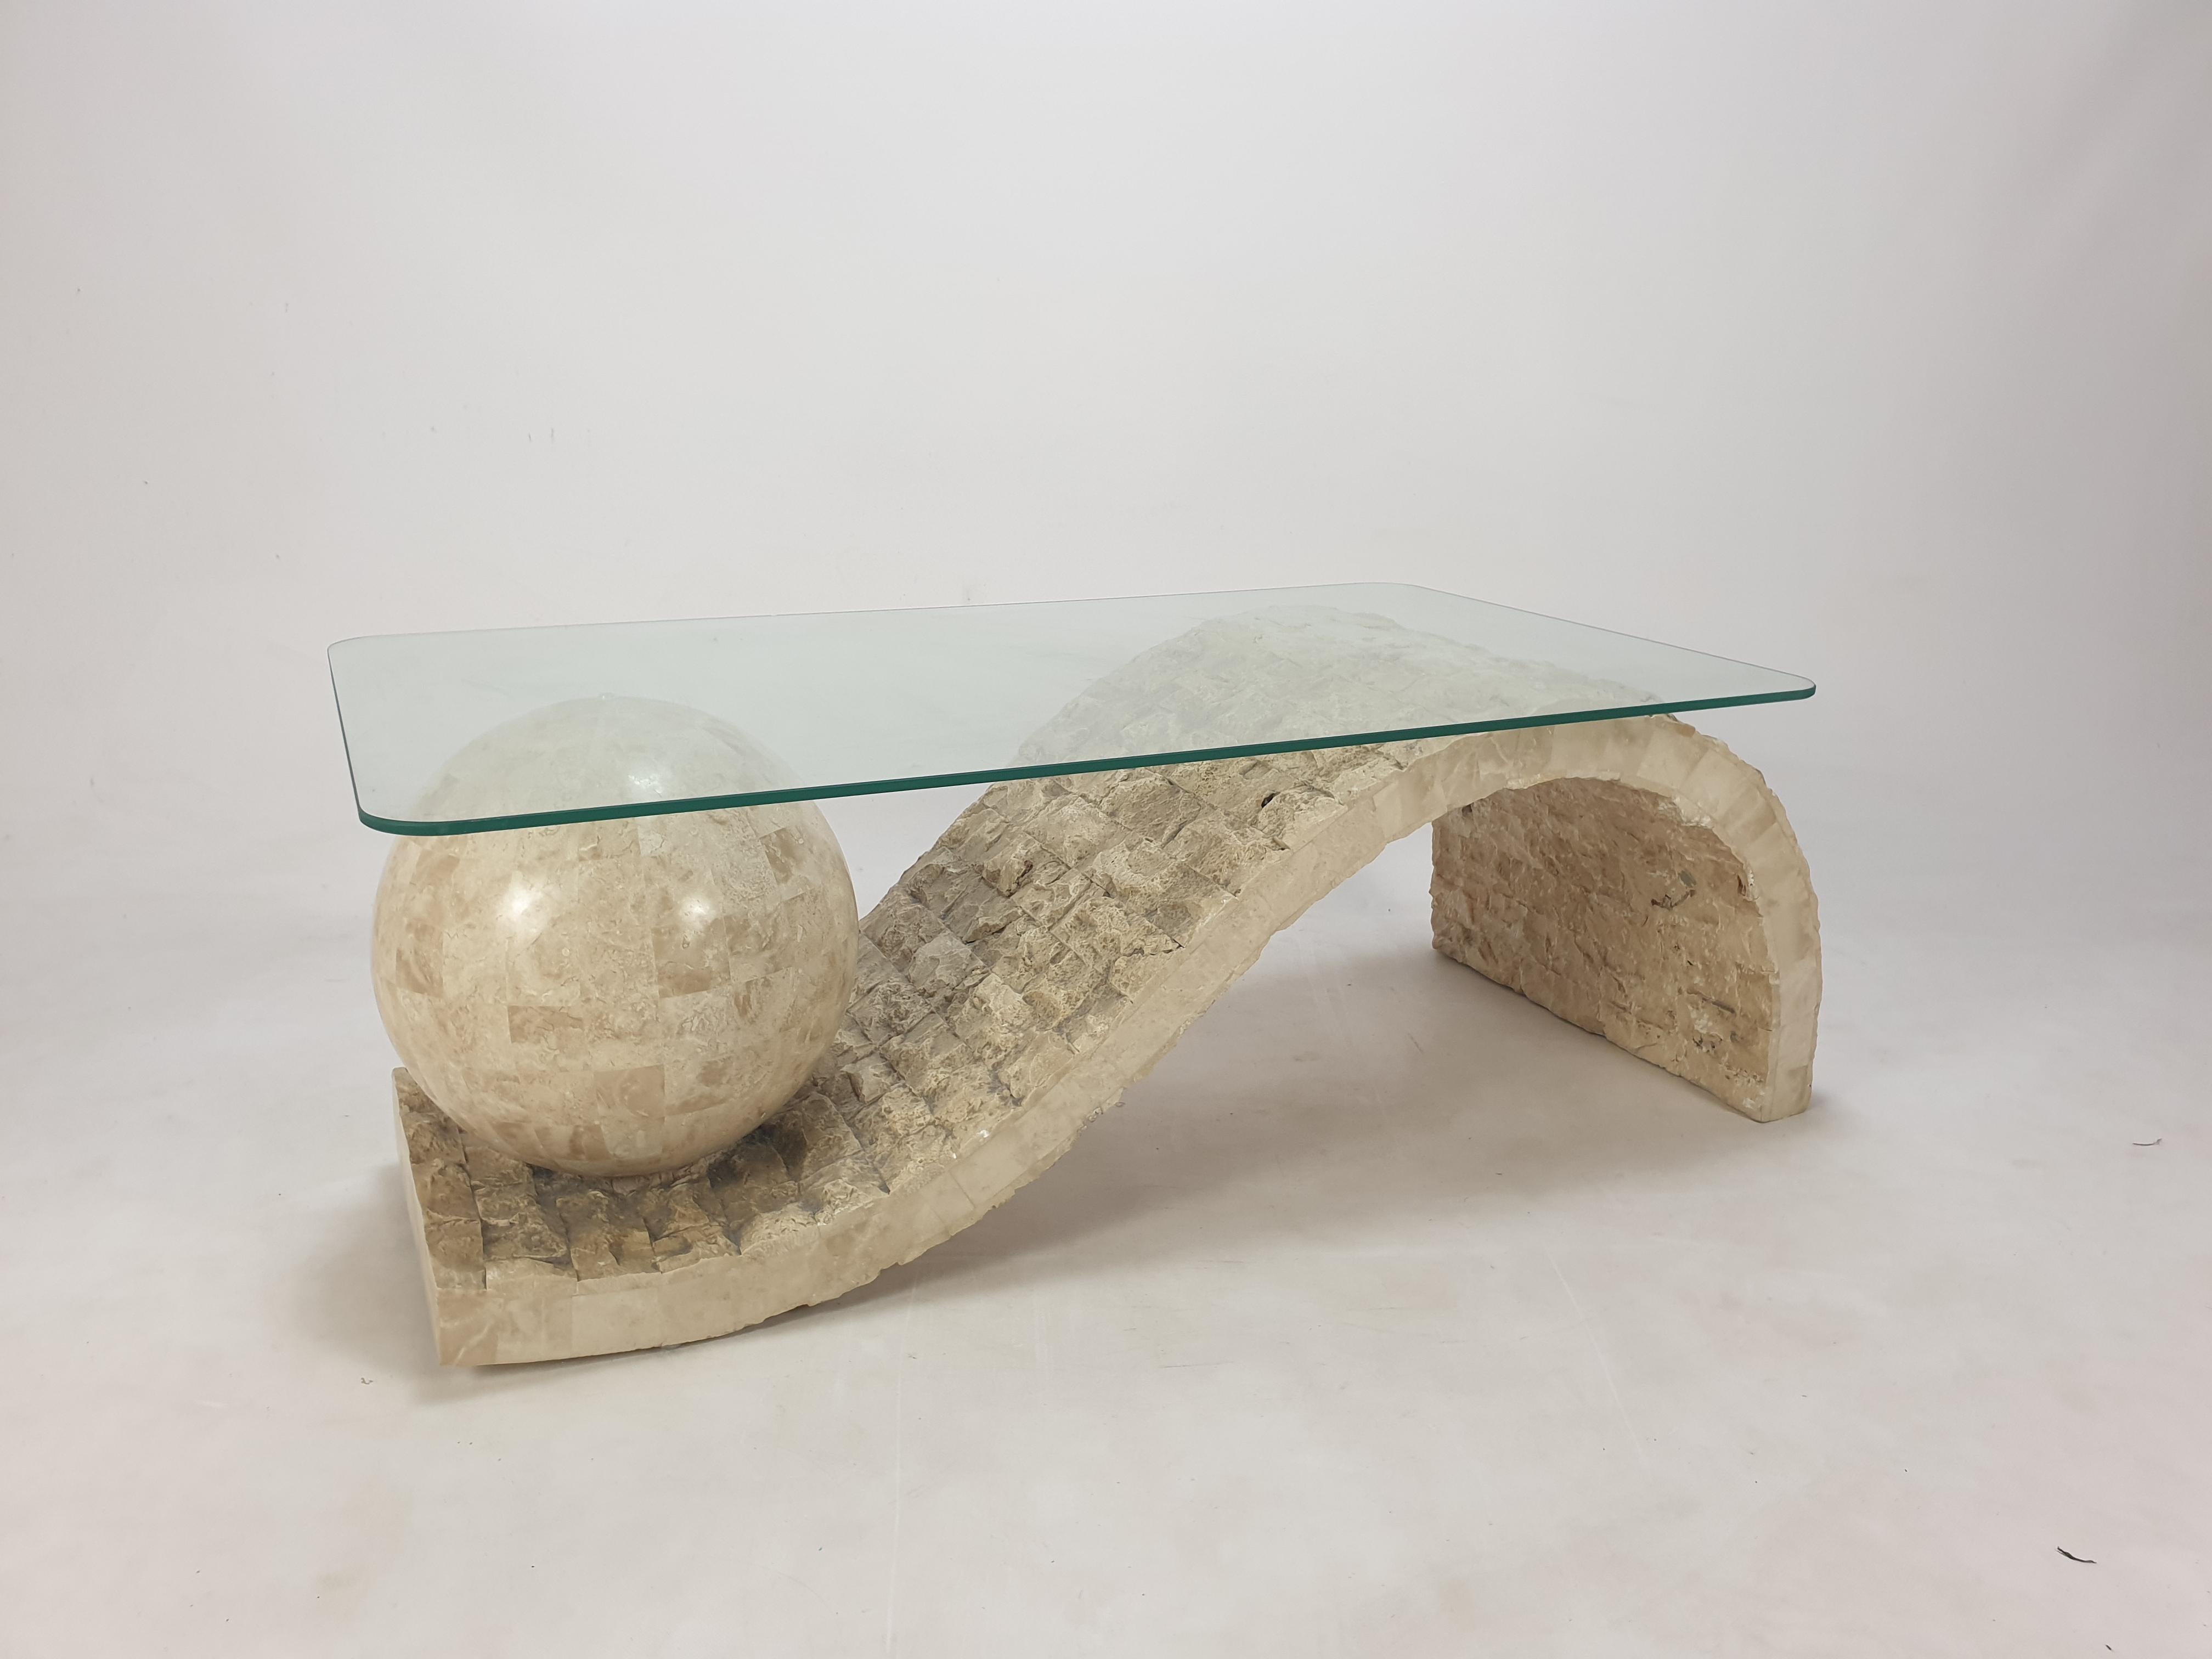 Très belle table basse ou d'appoint par Magnussen Ponte, années 1980.

L'étonnante base de la table est faite de pierre de Mactan ou de pierre fossile.
 